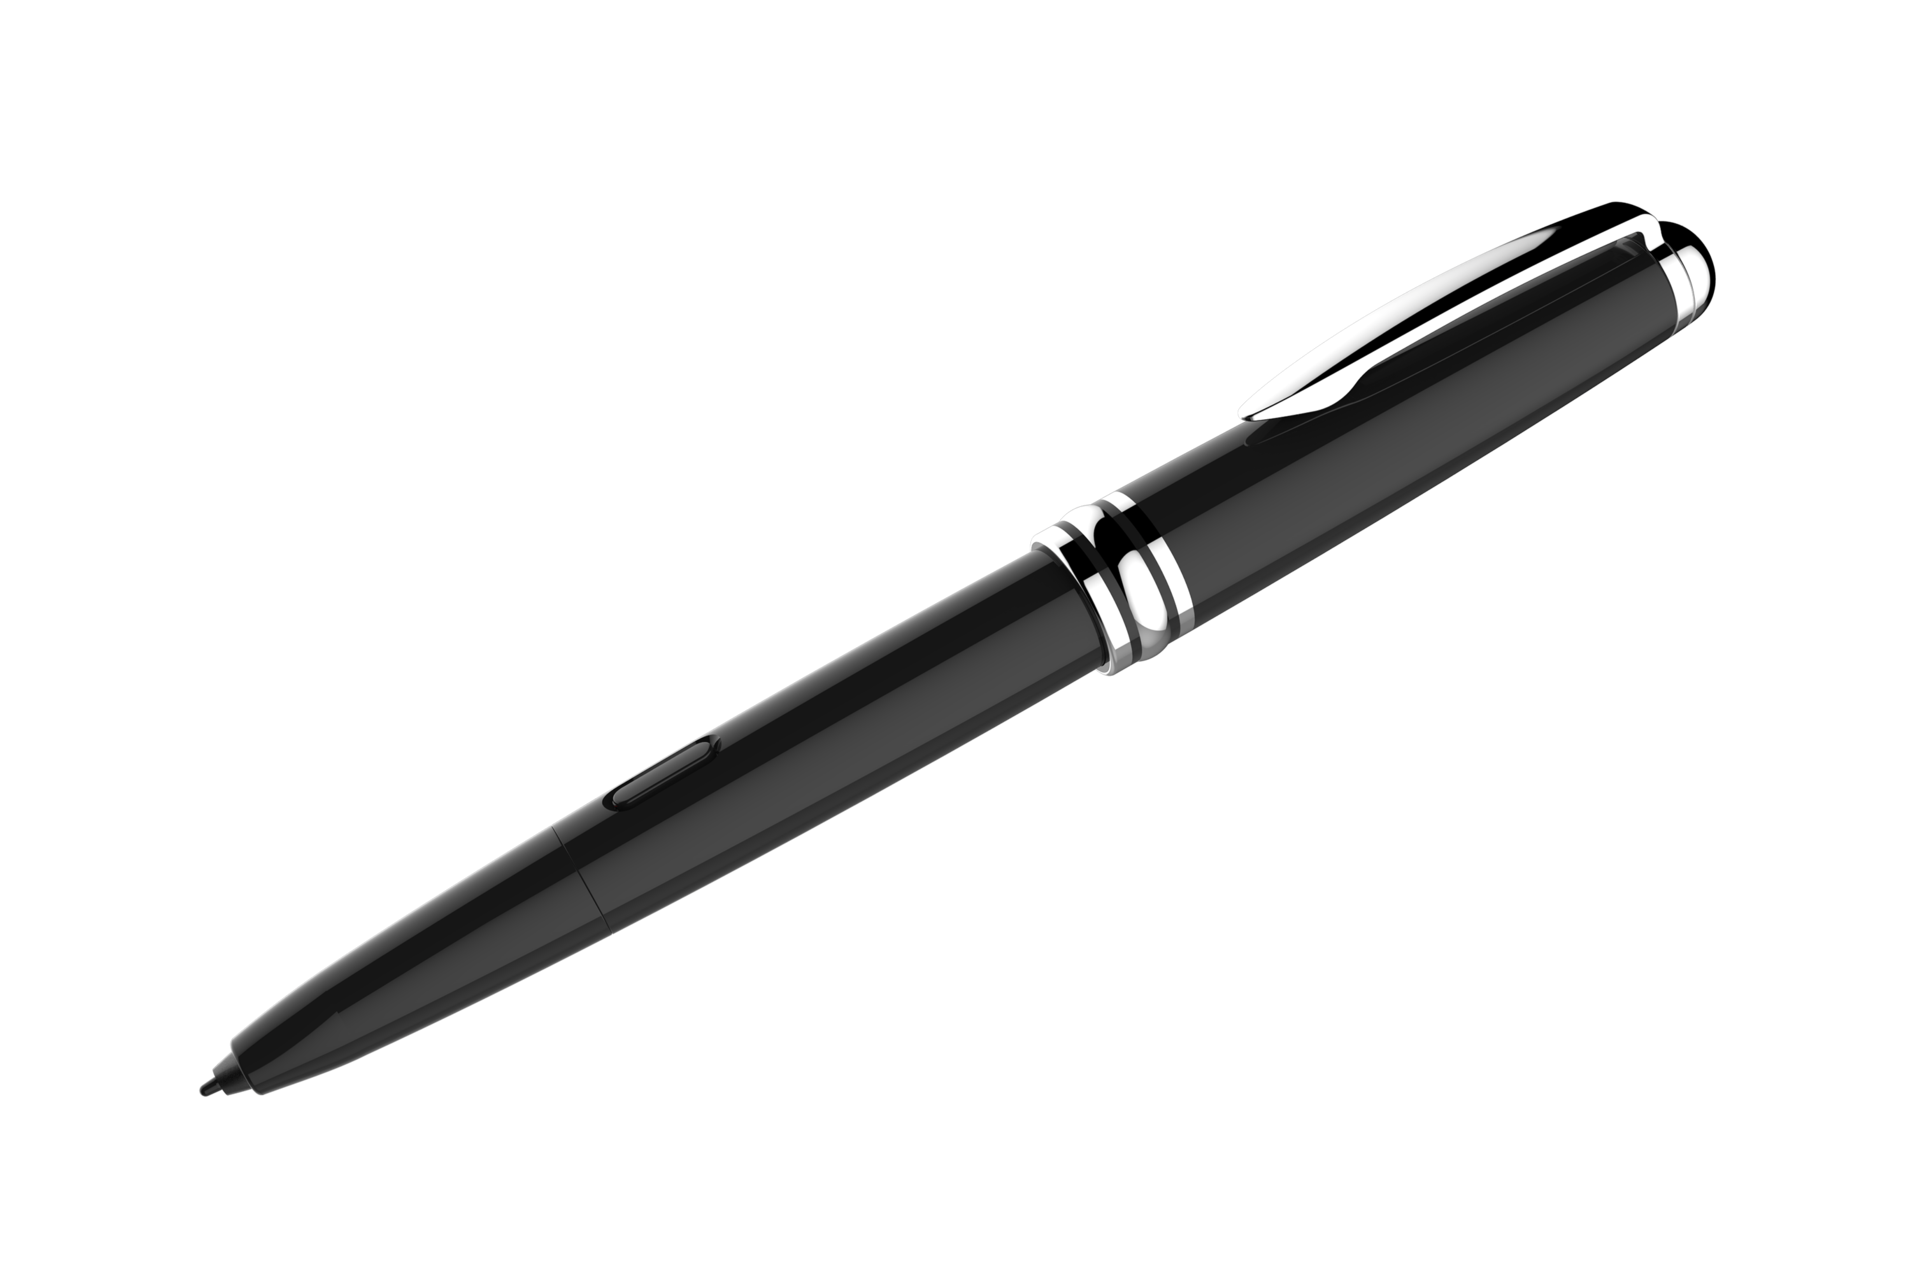  블랙 제품 기울어진 모습 기울어진 S Pen 뚜껑이 뒷쪽에 꽂혀 있는 모습